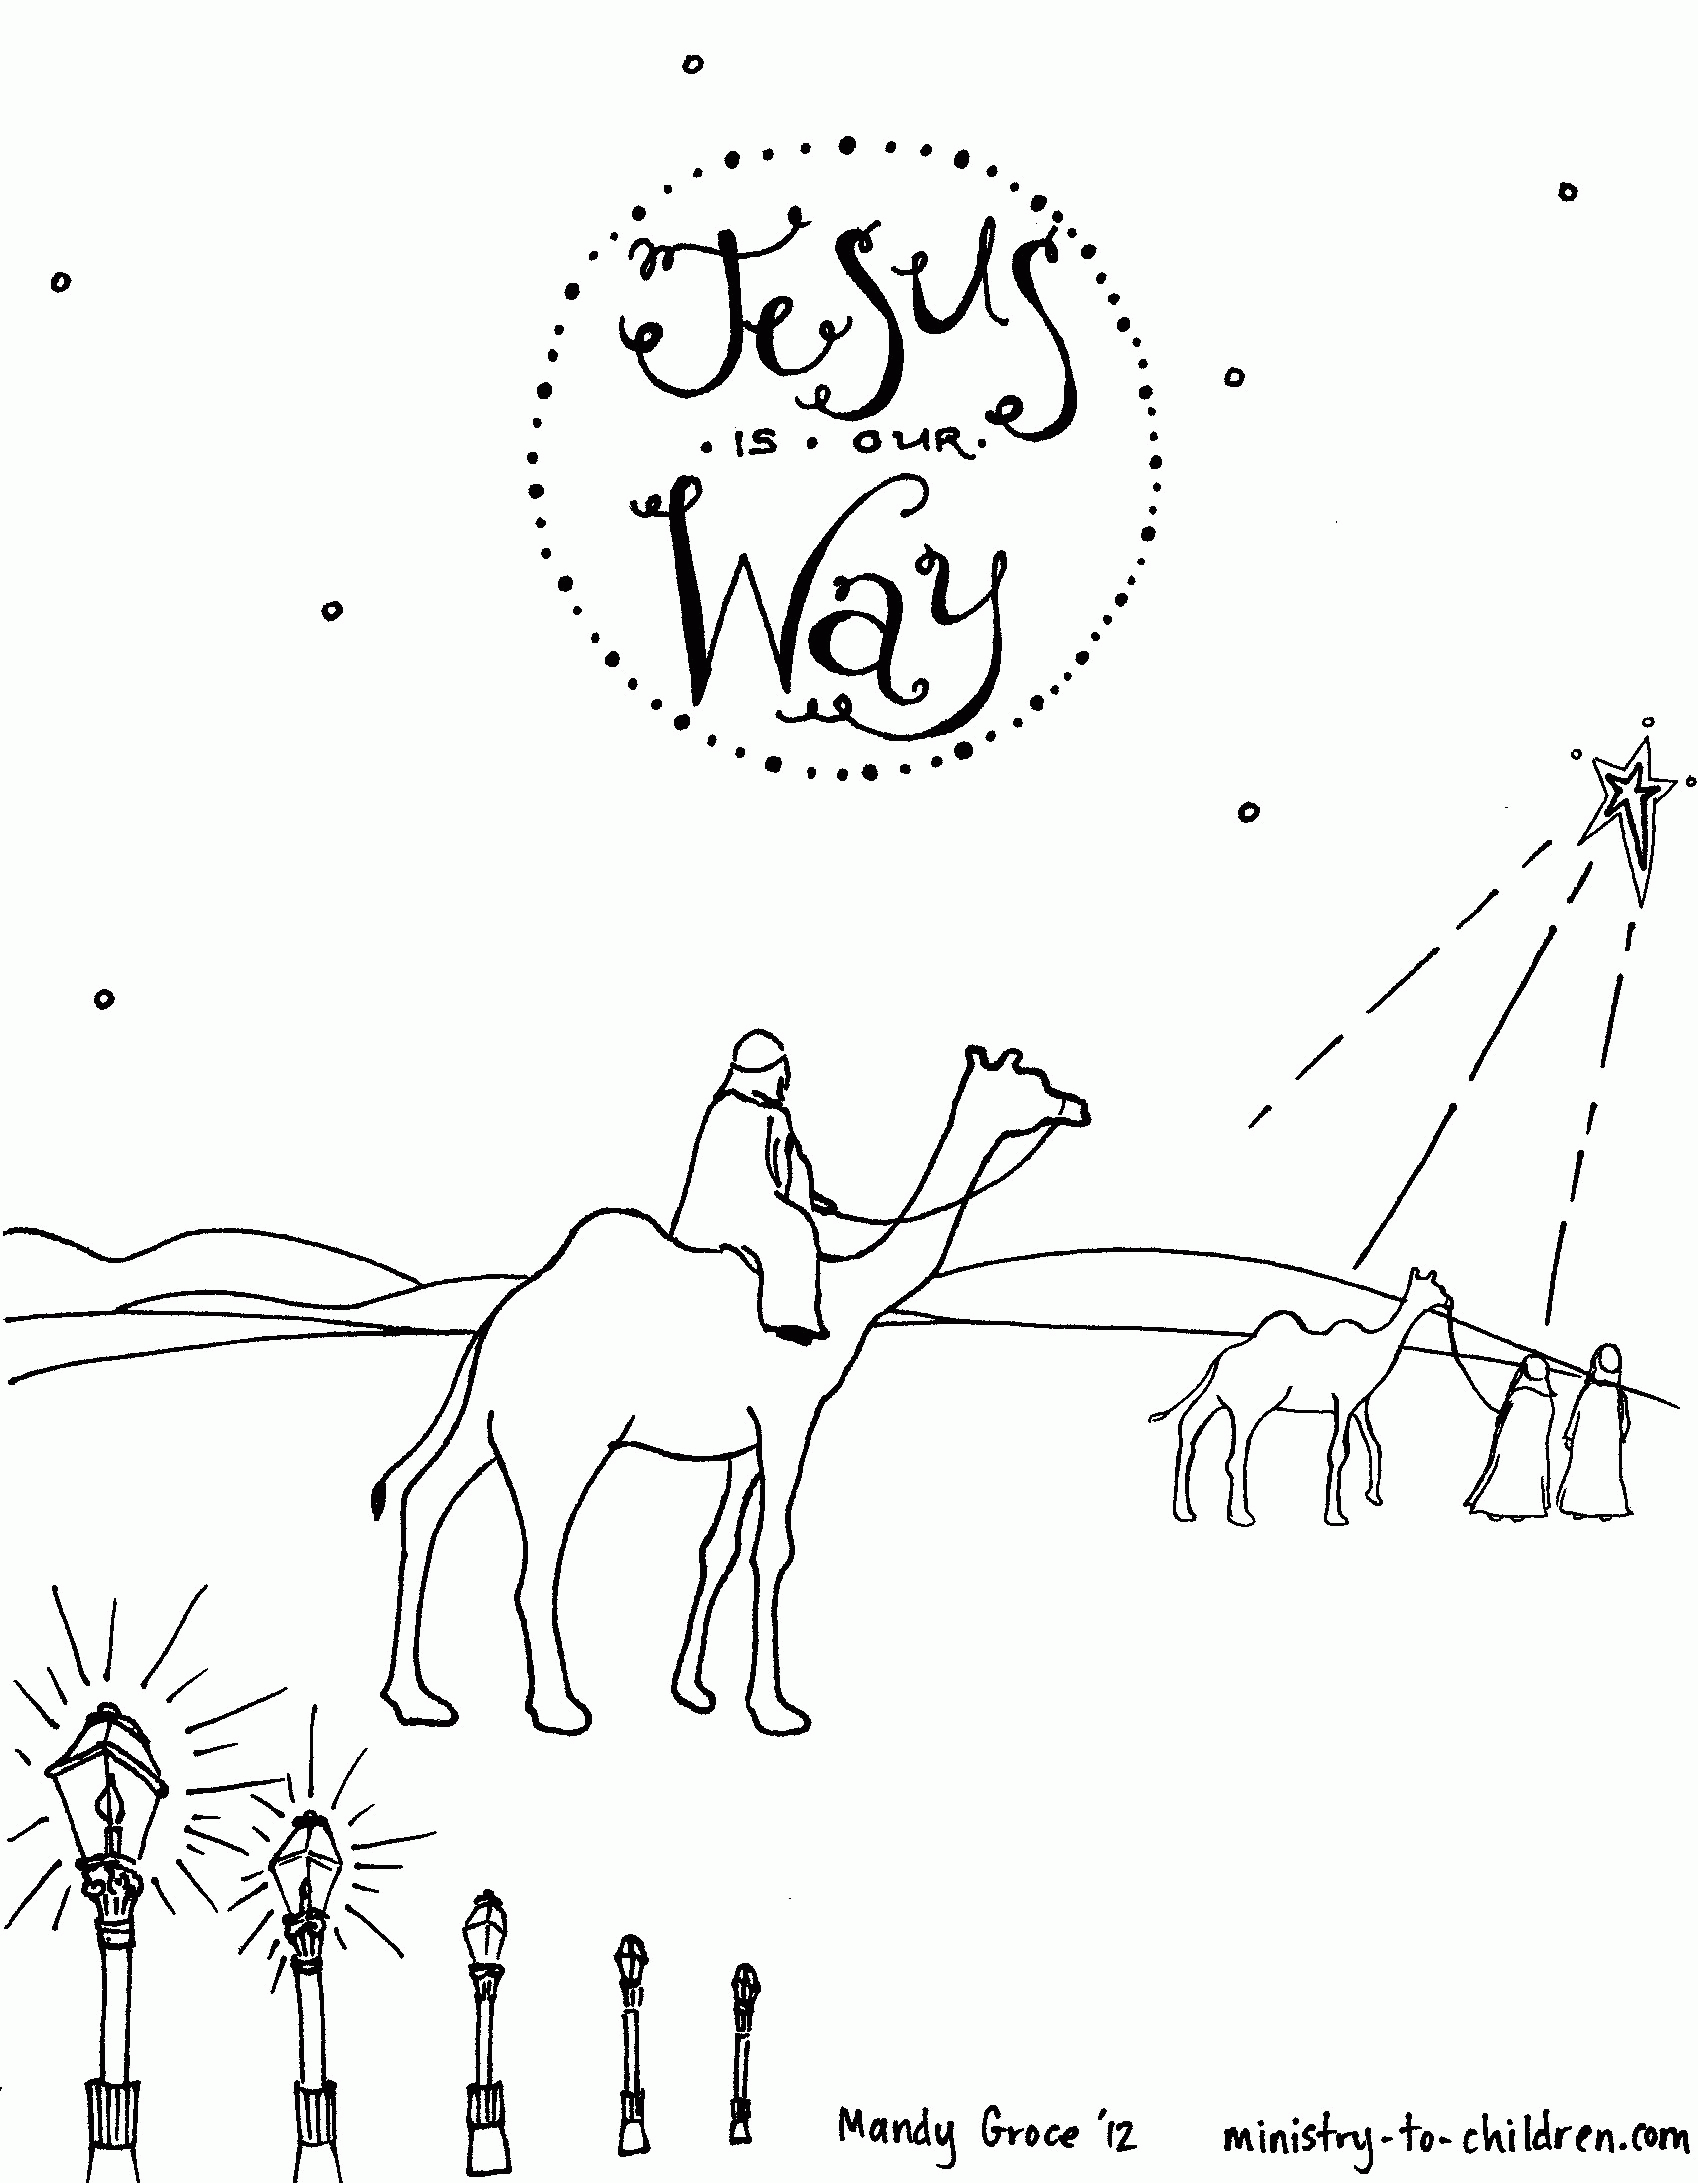 Wise Men Seeking Jesus Coloring Sheet for Christmas